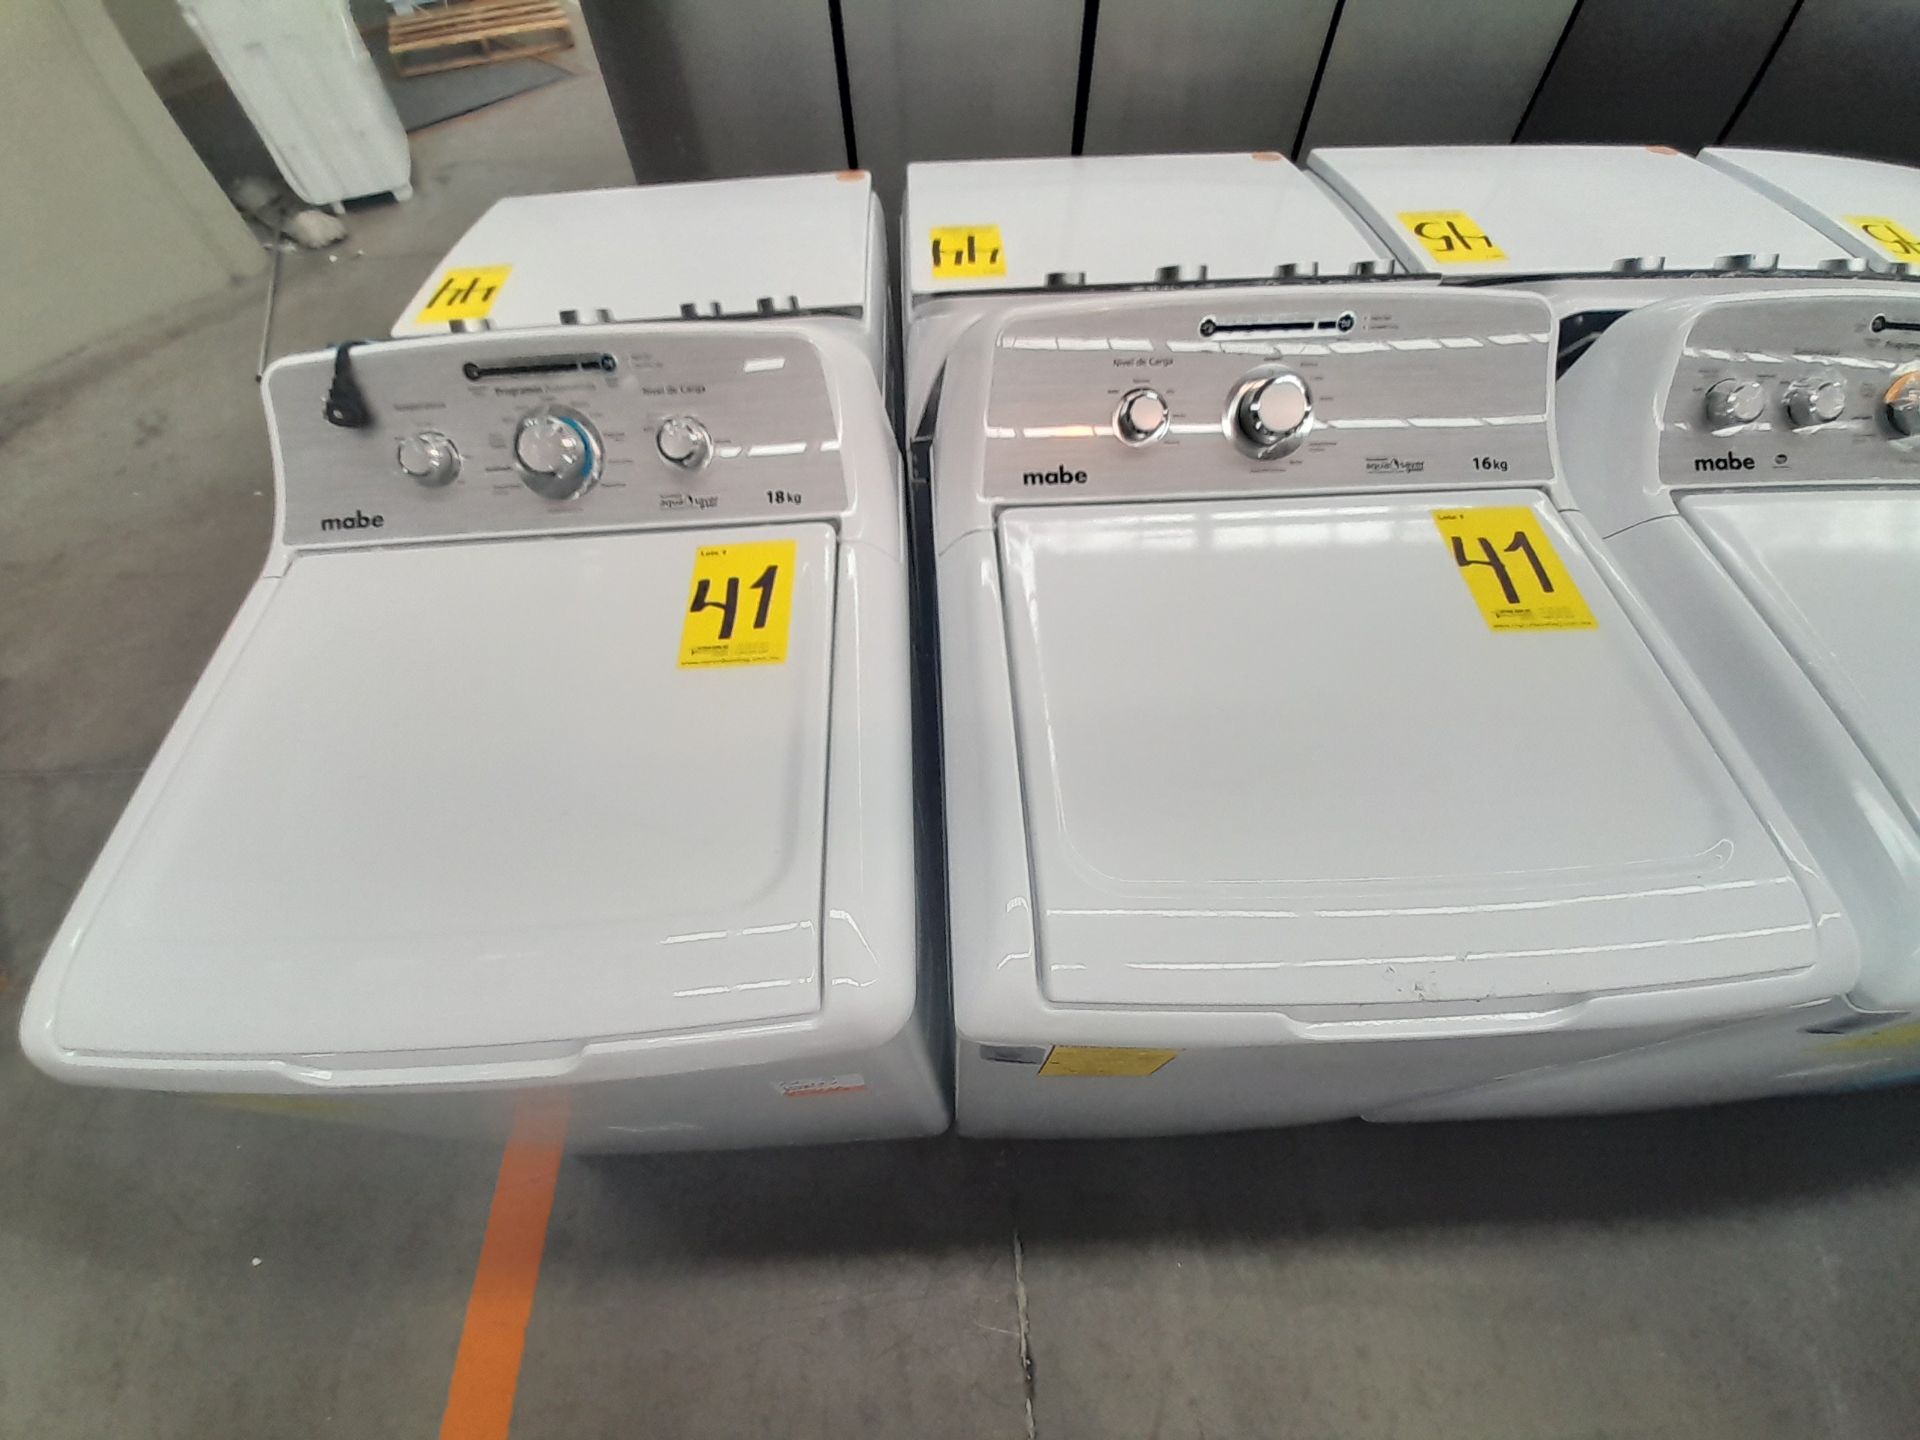 Lote de 2 lavadoras contiene: 1 lavadora de 18 KG, Marca MABE, Modelo LMA78113CBAB01, Serie S76416, - Image 4 of 6